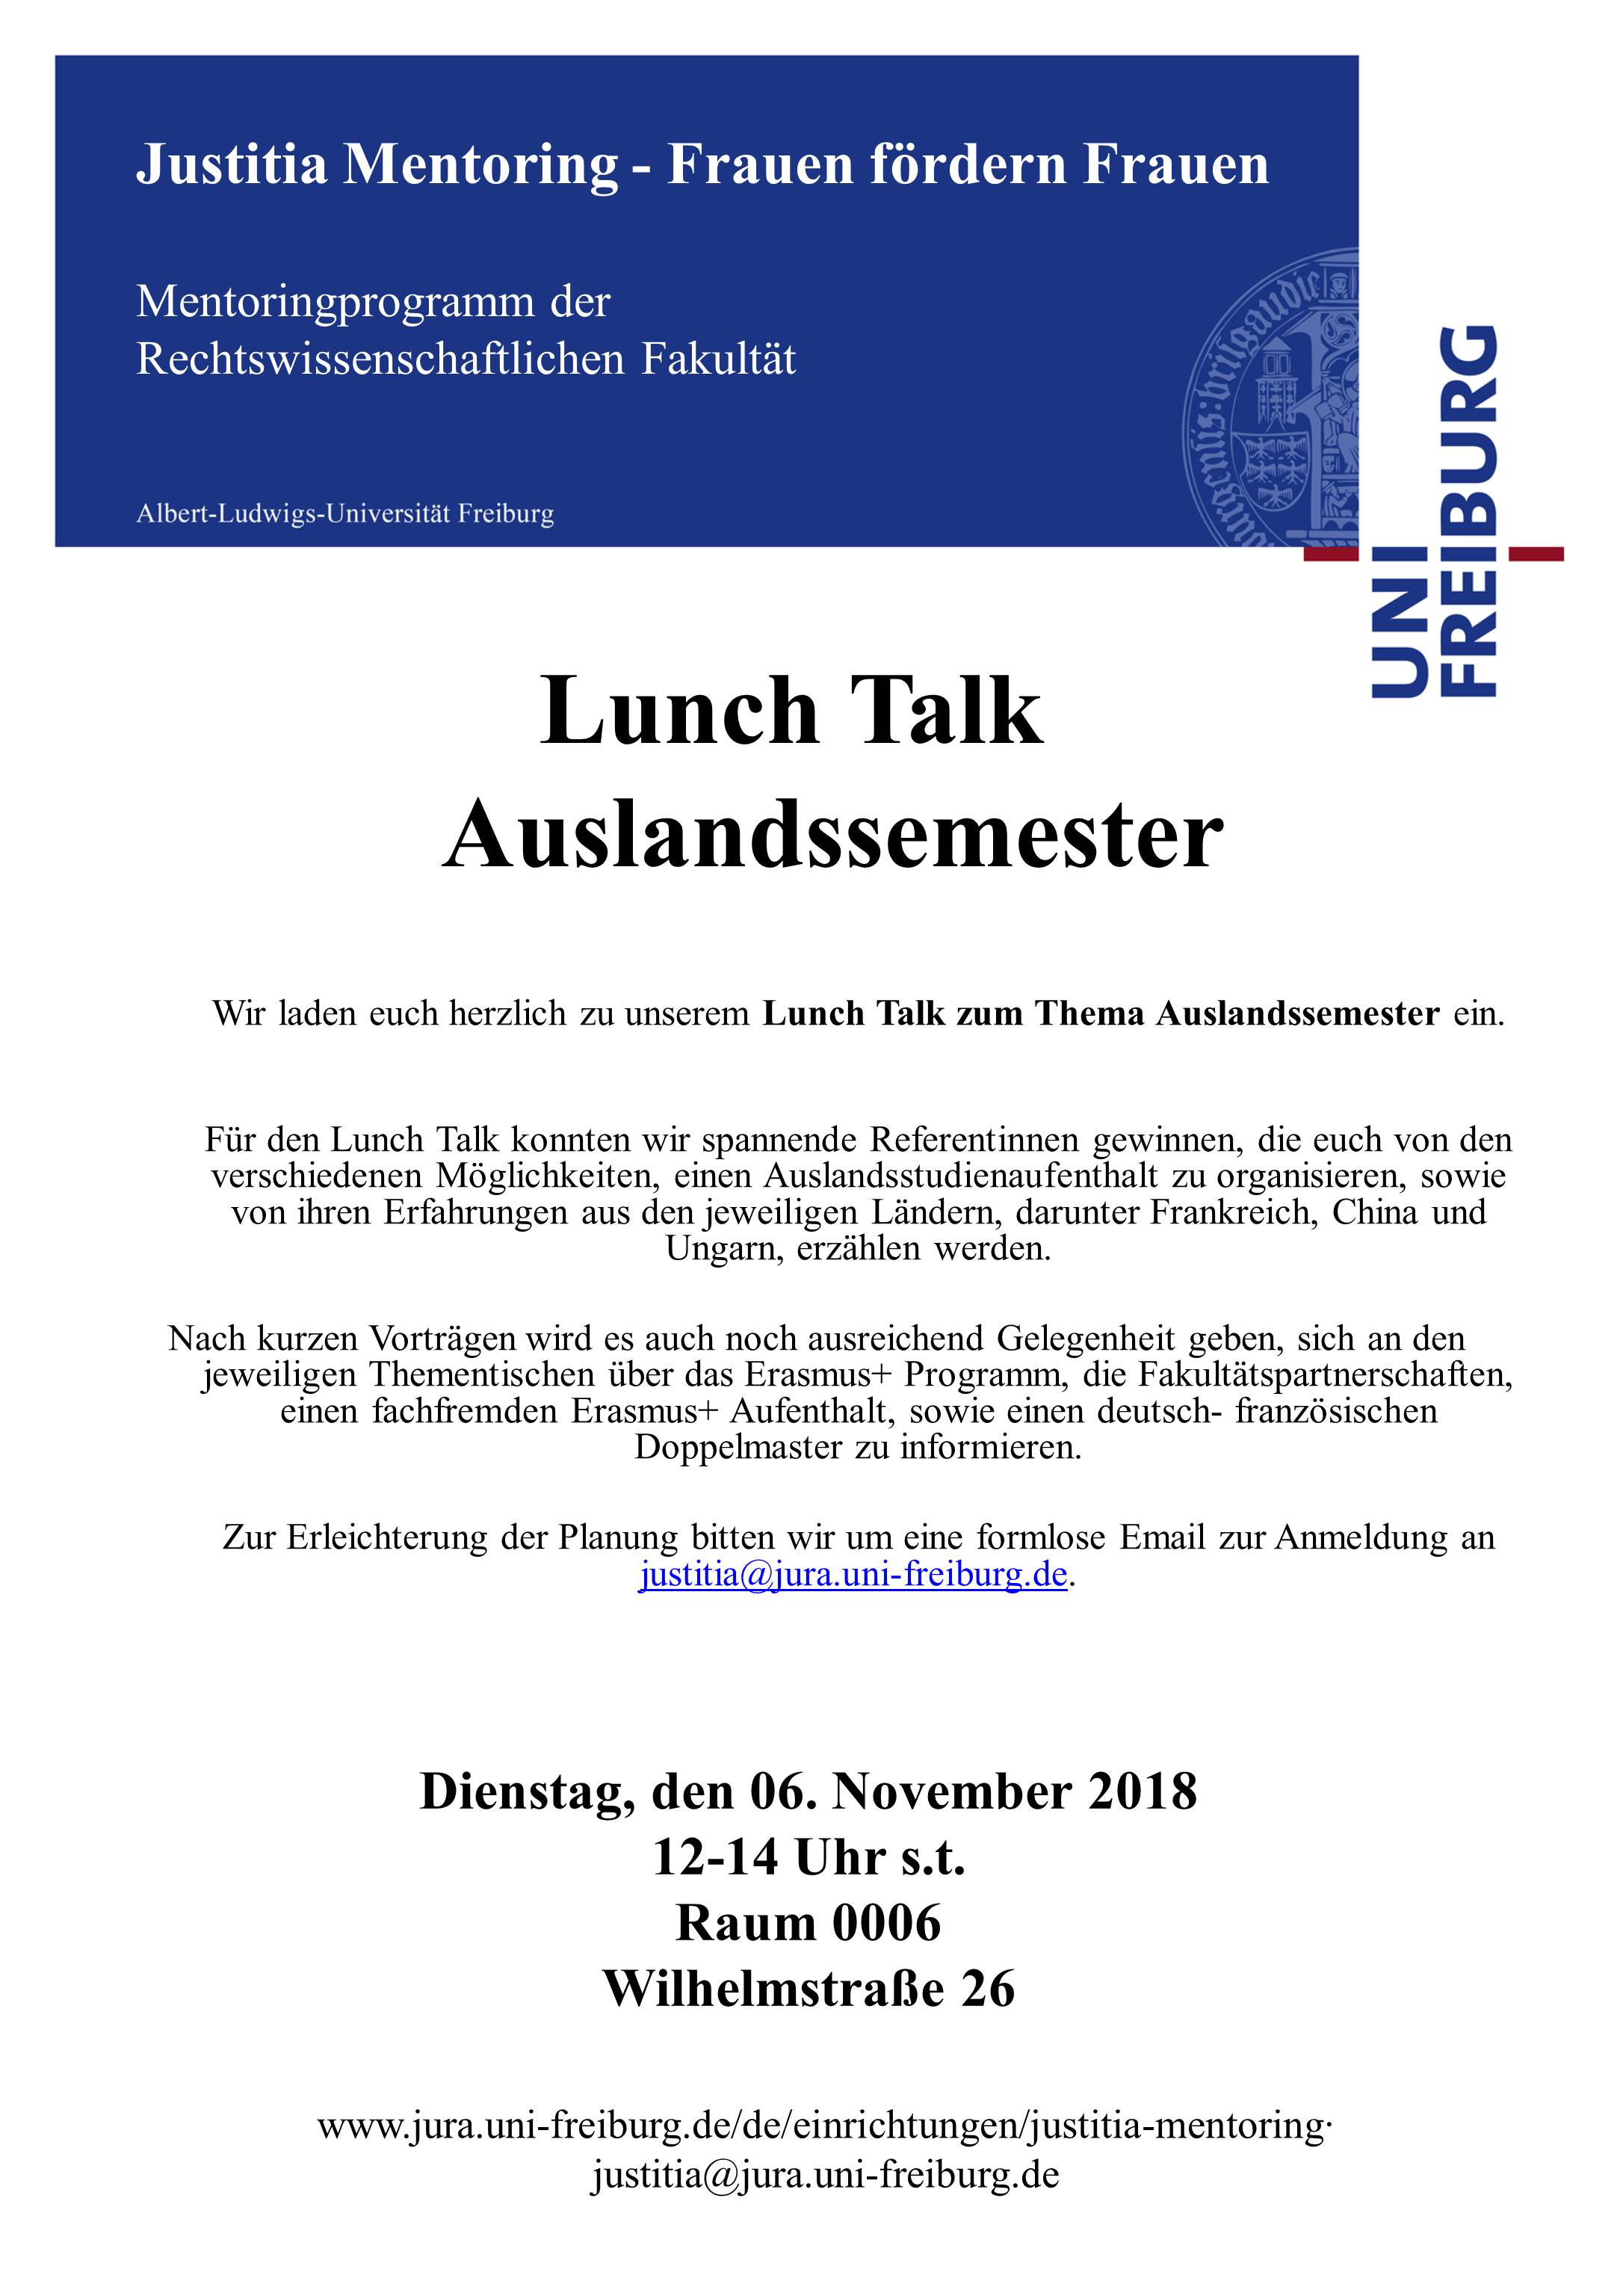 Lunch Talk Auslandssemester am 6.11.2018, 12.00 Uhr